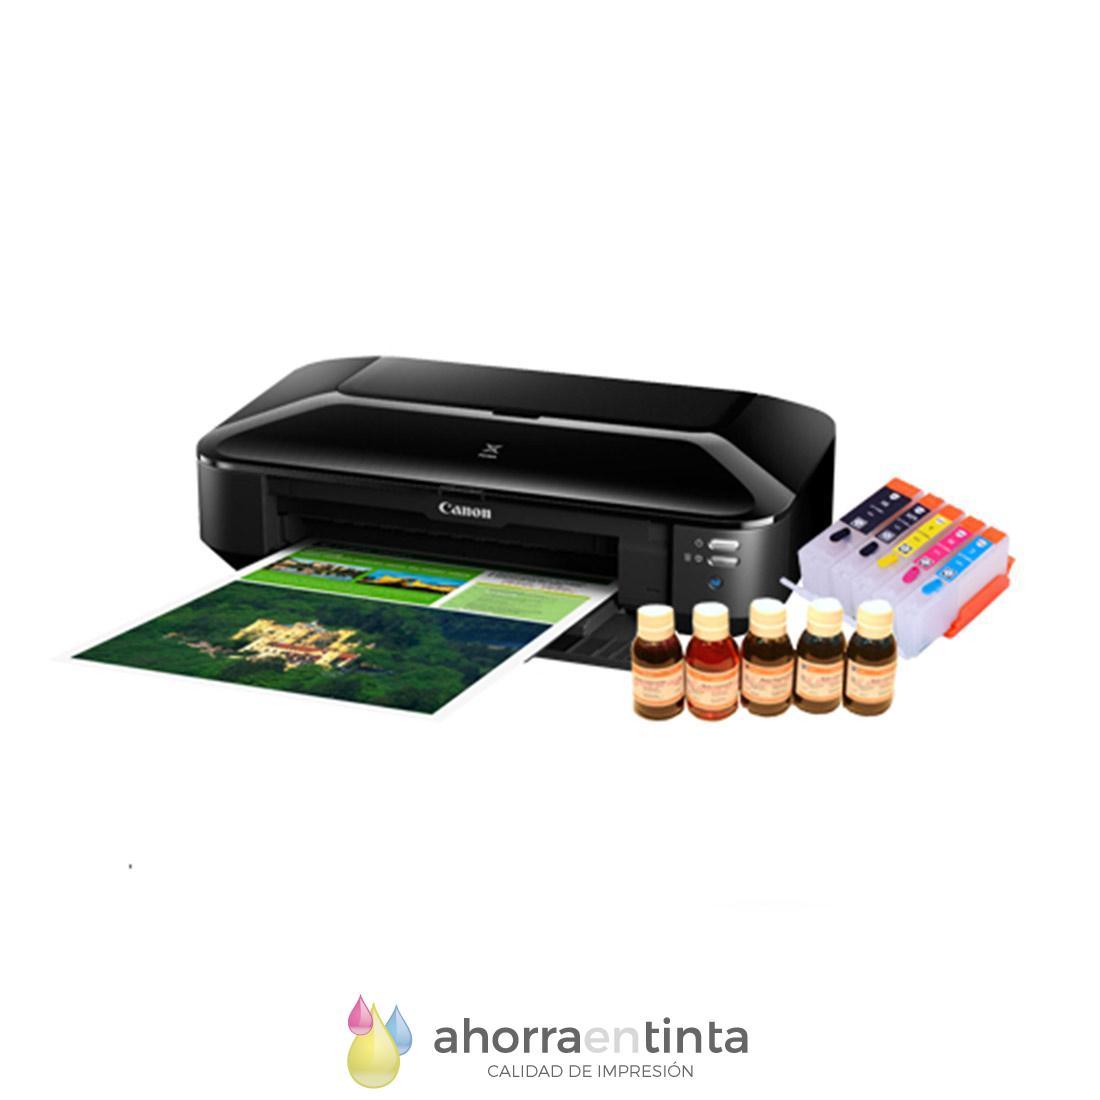 Impresoras con tinta recargable — Tienda Canon Espana